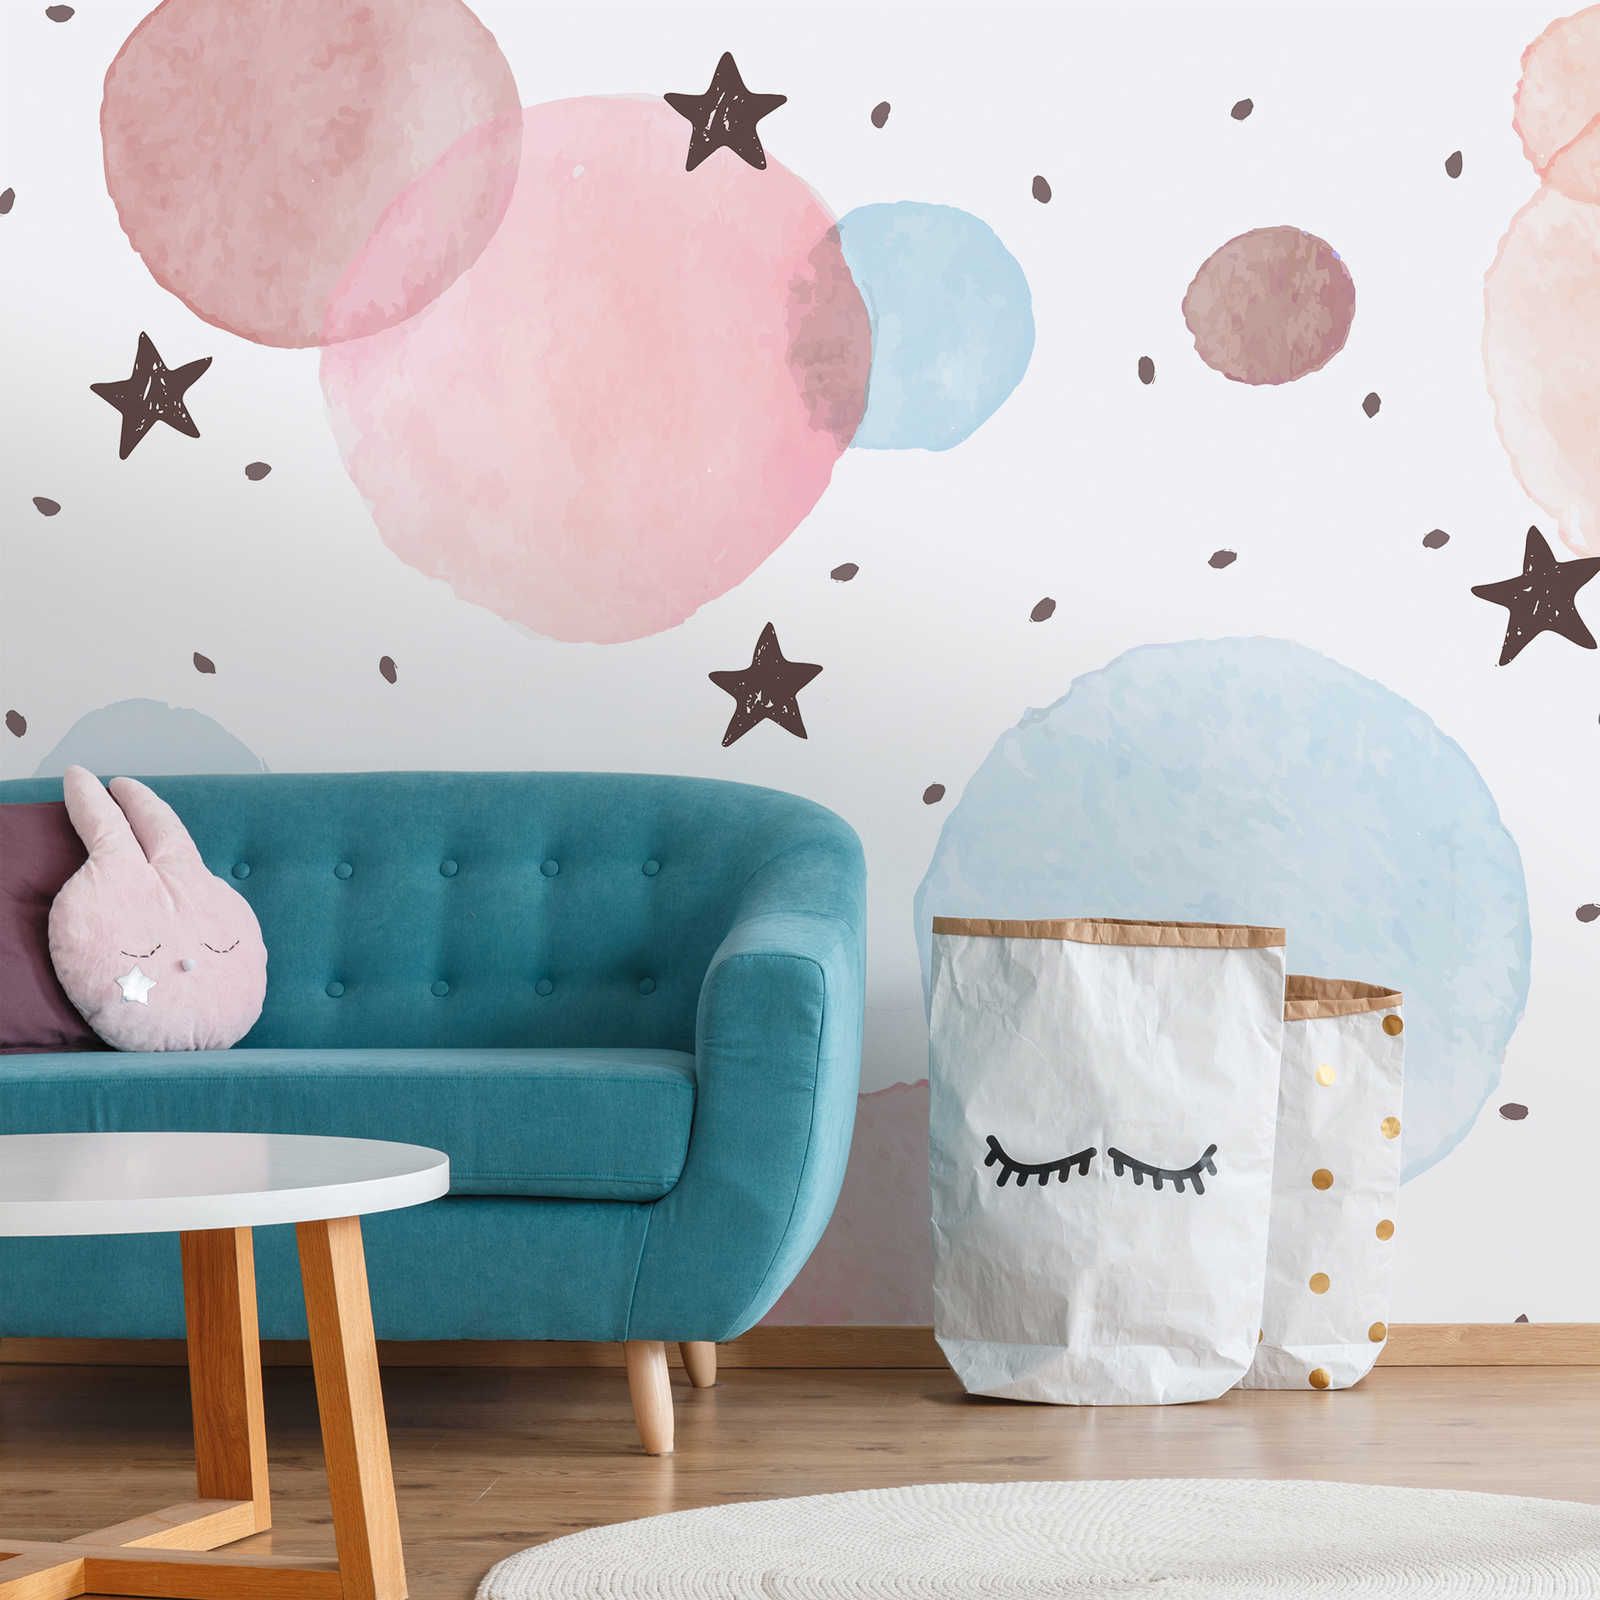 Fototapete fürs Kinderzimmer mit Sternen, Punkten und Kreisen – Glattes & perlmutt-schimmerndes Vlies
